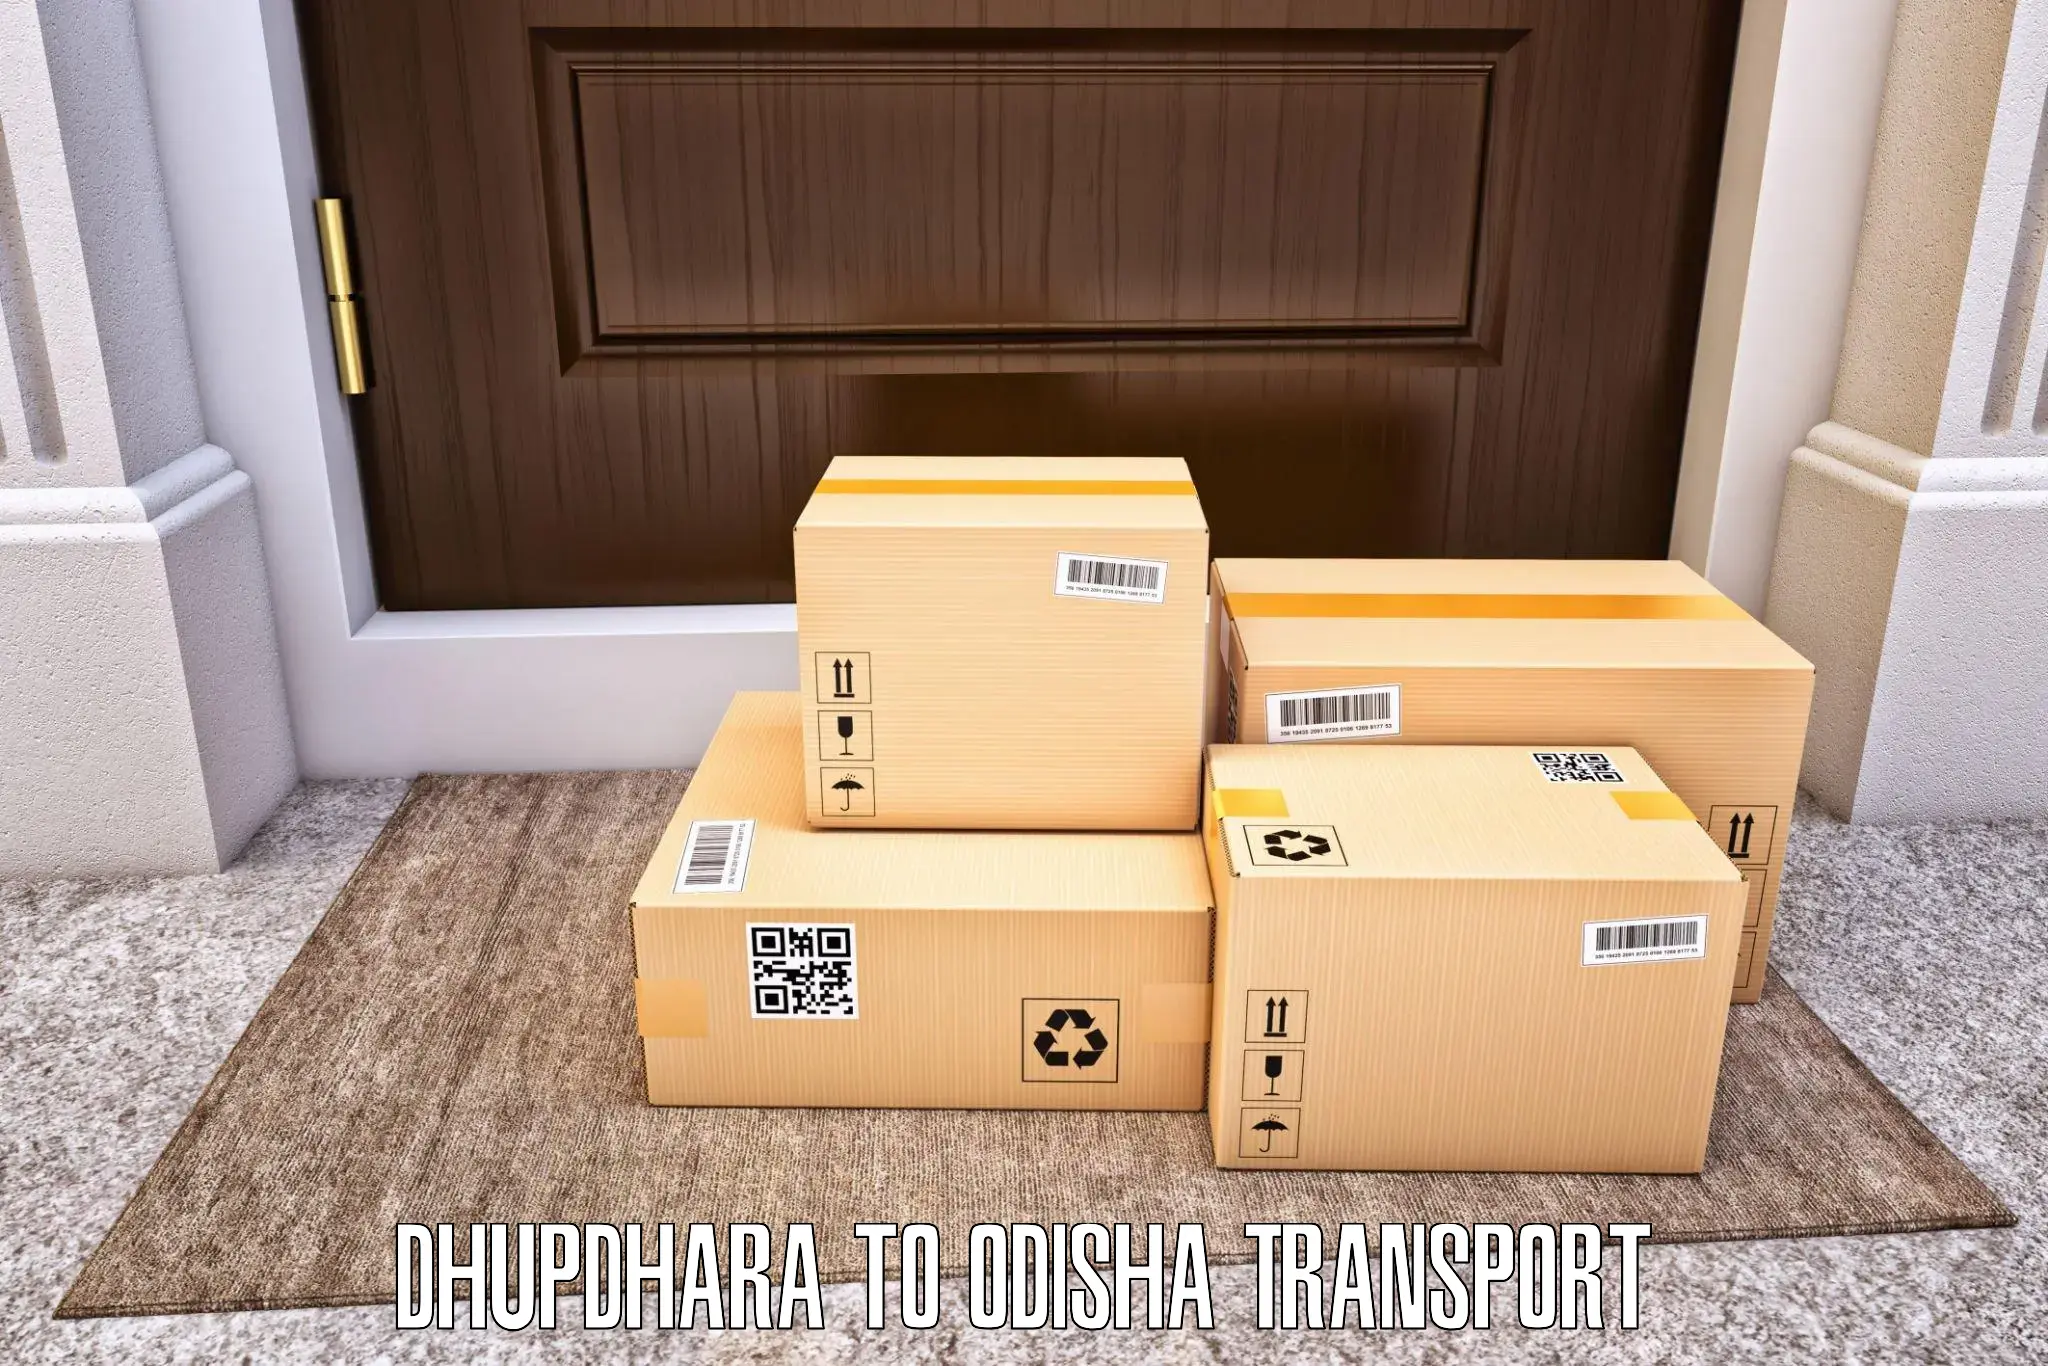 Interstate transport services Dhupdhara to Jaraka